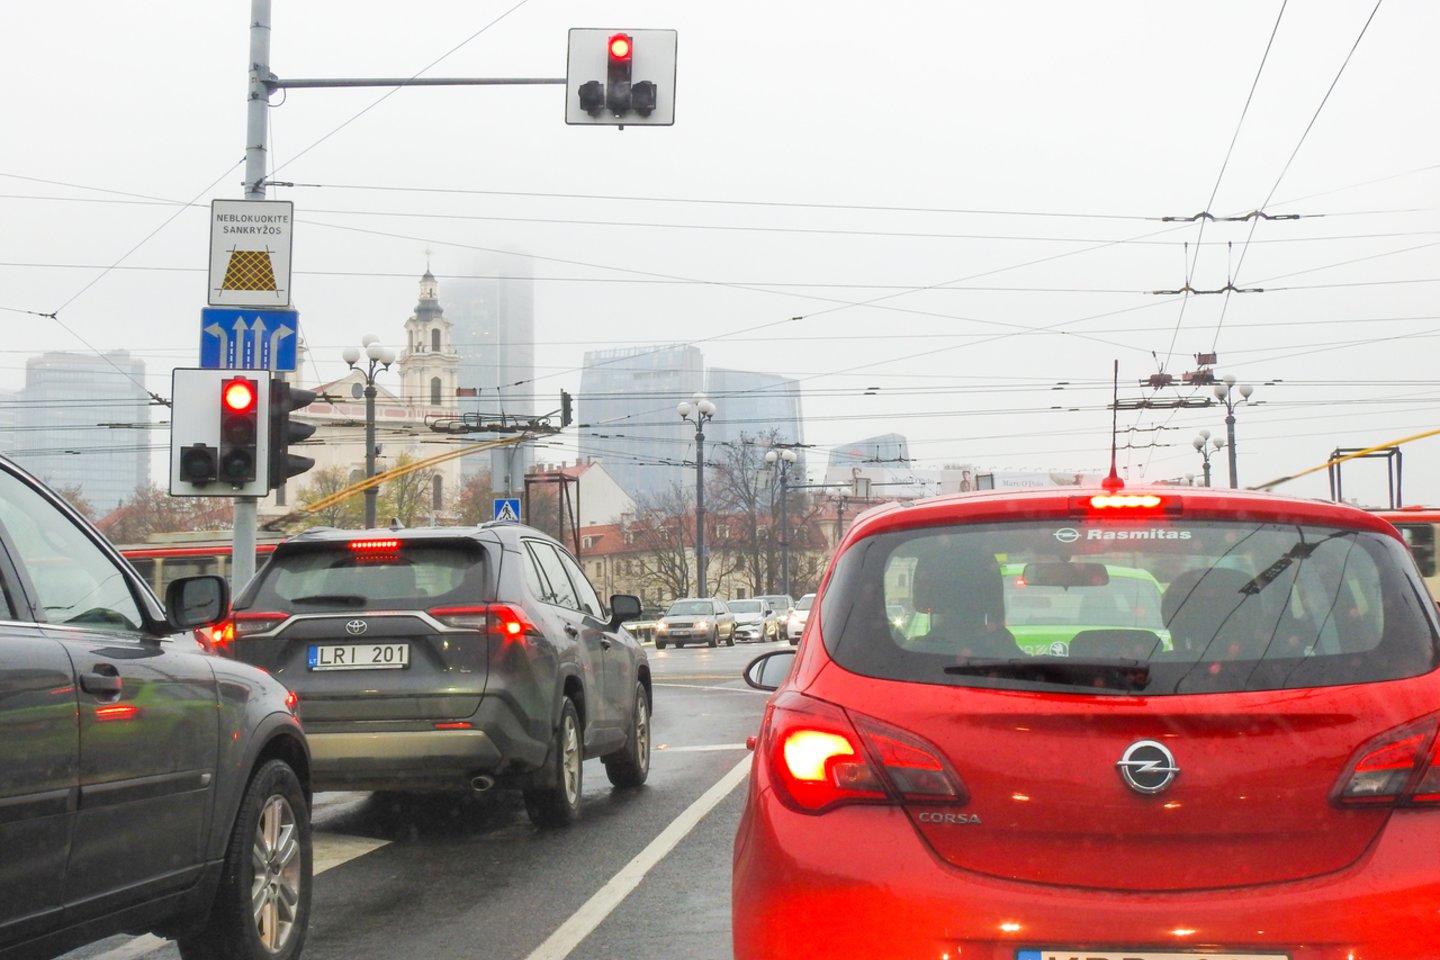 Valstybės įmonė Lietuvos automobilių kelių direkcija primena, kad nuo lapkričio 10 d. iki kovo 31 d. draudžiama eksploatuoti motorines transporto priemones.<br>V.Ščiavinsko nuotr.